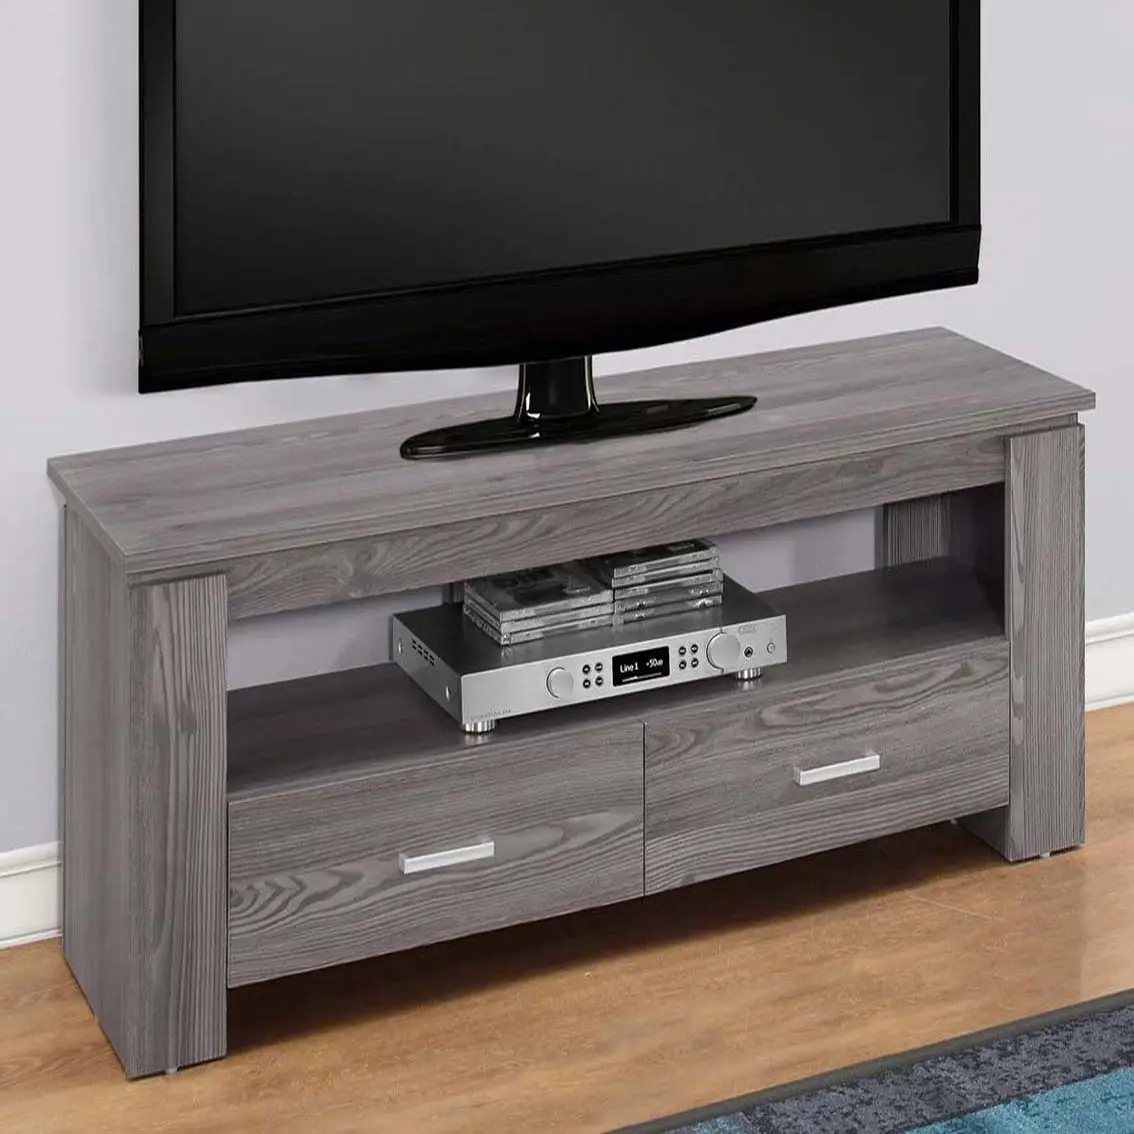 ТВ-подставка серого цвета с двумя ящиками для хранения